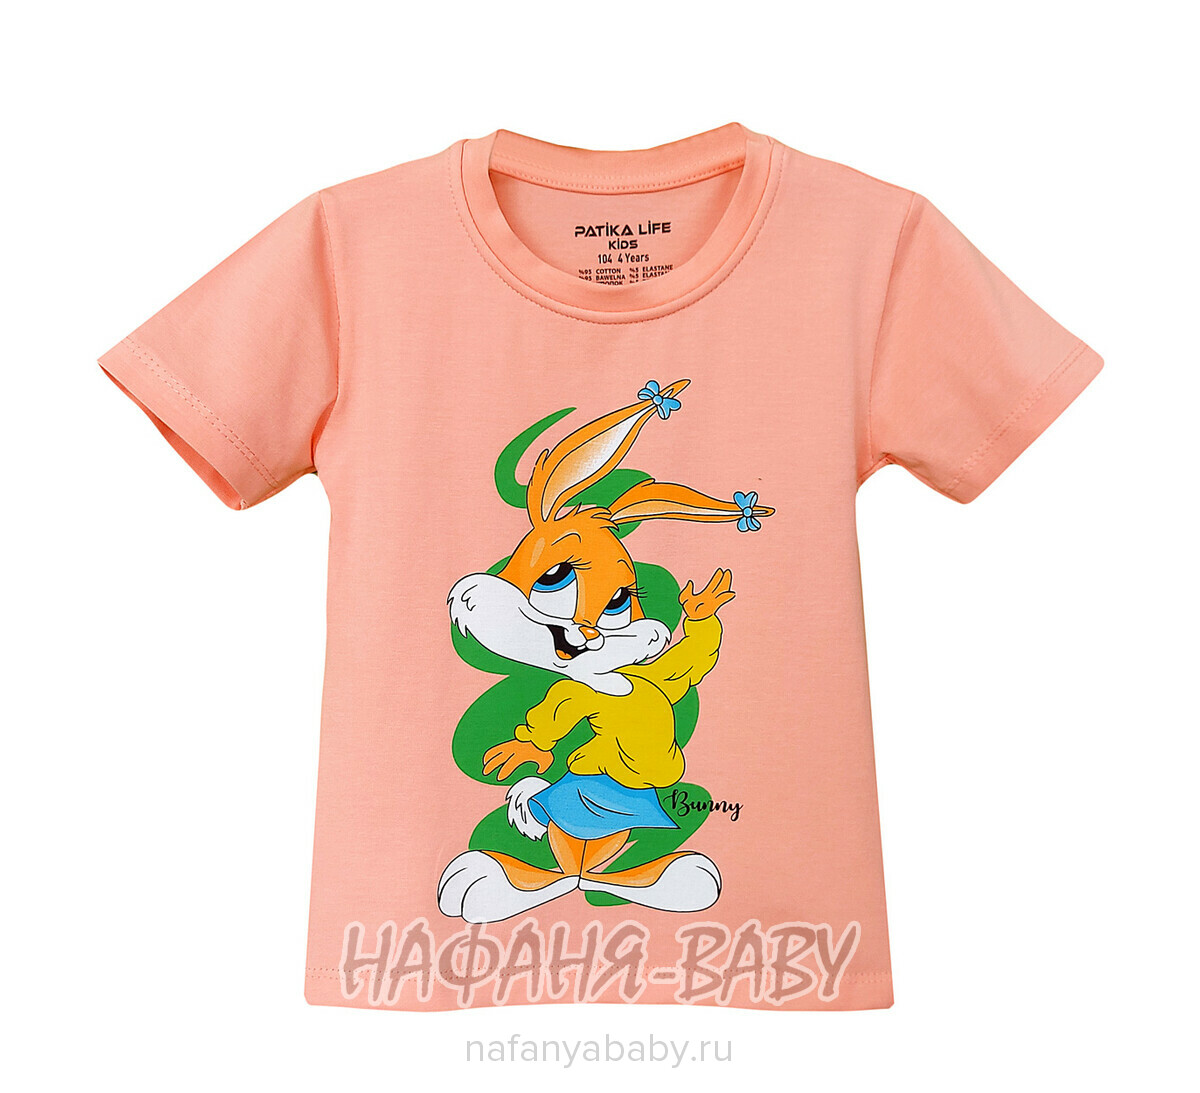 Детская футболка PATIKA арт. 4219 для девочки 1-4 года, цвет персиковый, оптом Турция